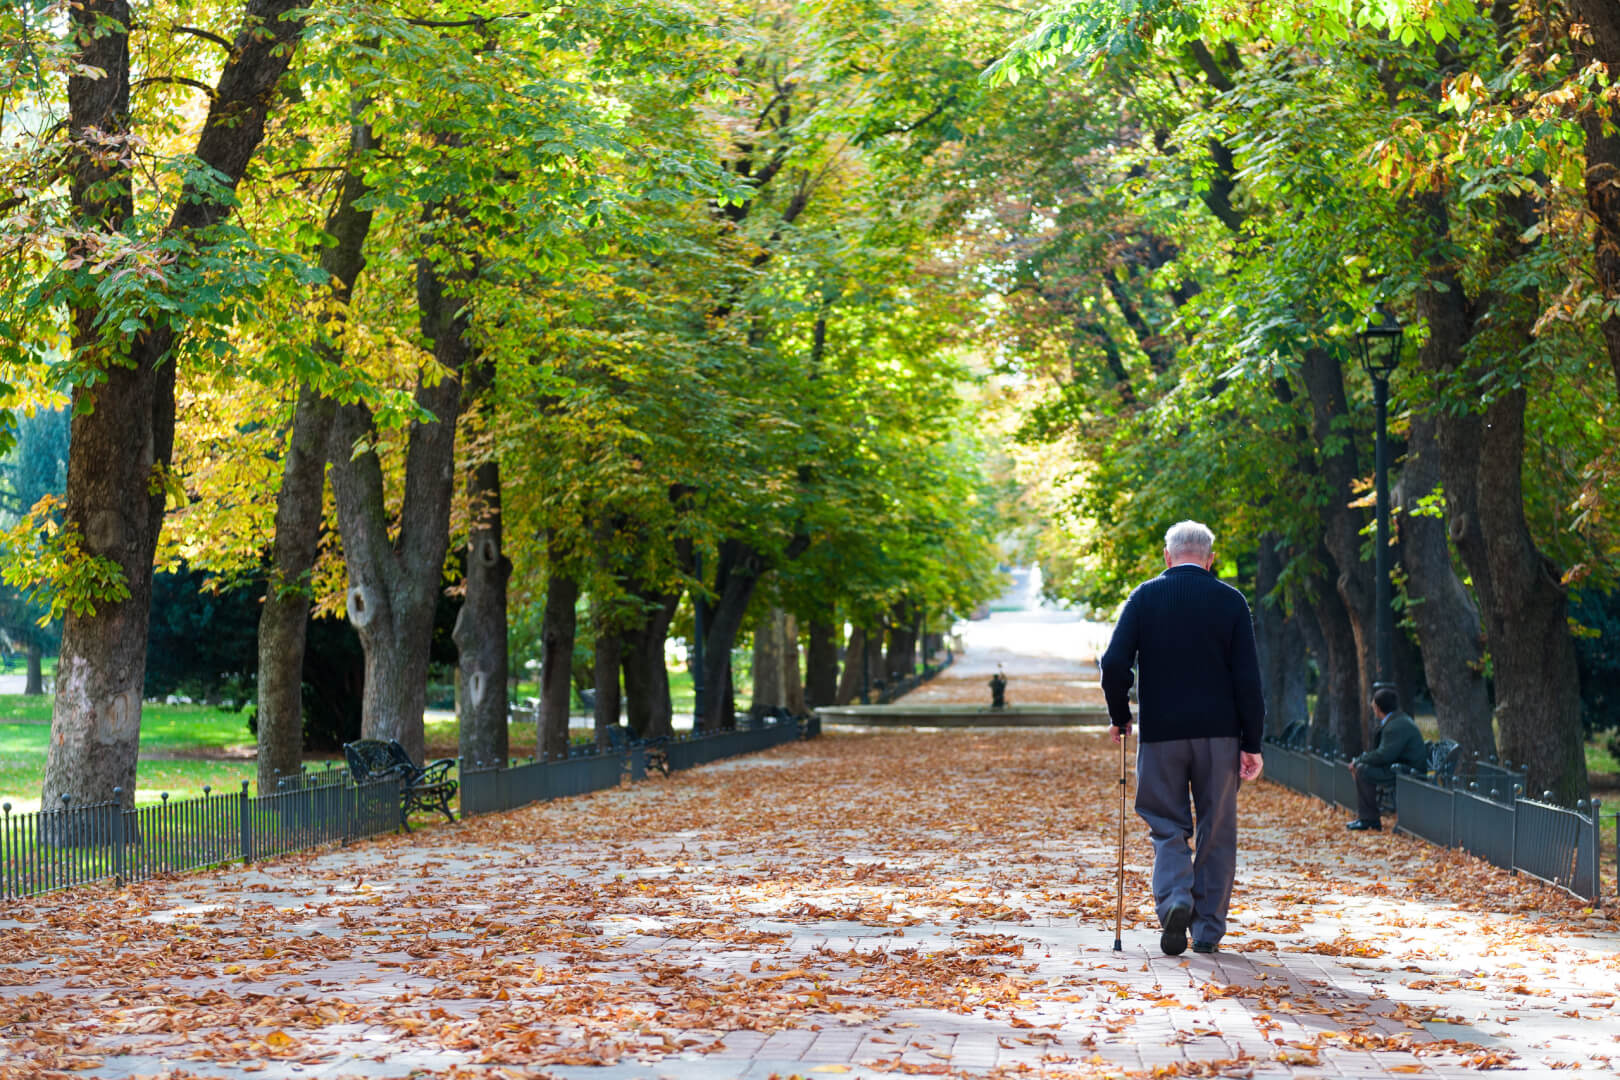 En la imagen se muestra un anciano paseando por un parque con un bastón, en un claro ejemplo de contraste con las generaciones de personas mayores de antes y las de ahora, que tienen más vitalidad y por lo general se mantienen en mejor estado físico.